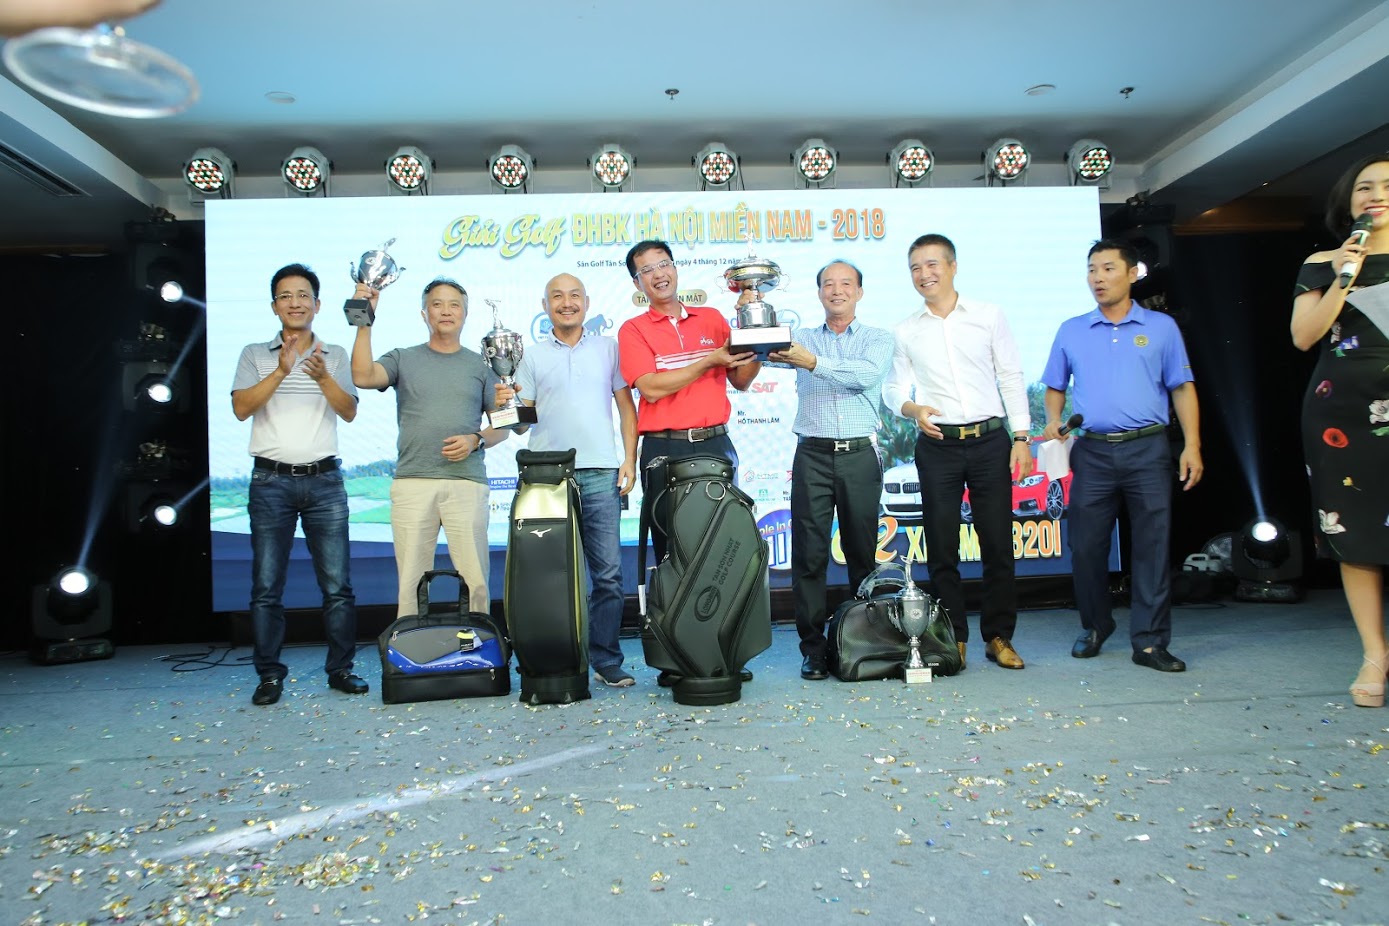 Đỗ Hồng Hải xuất sắc giành Best Gross ở giải golf ĐHBK Hà Nội Miền Nam 2018